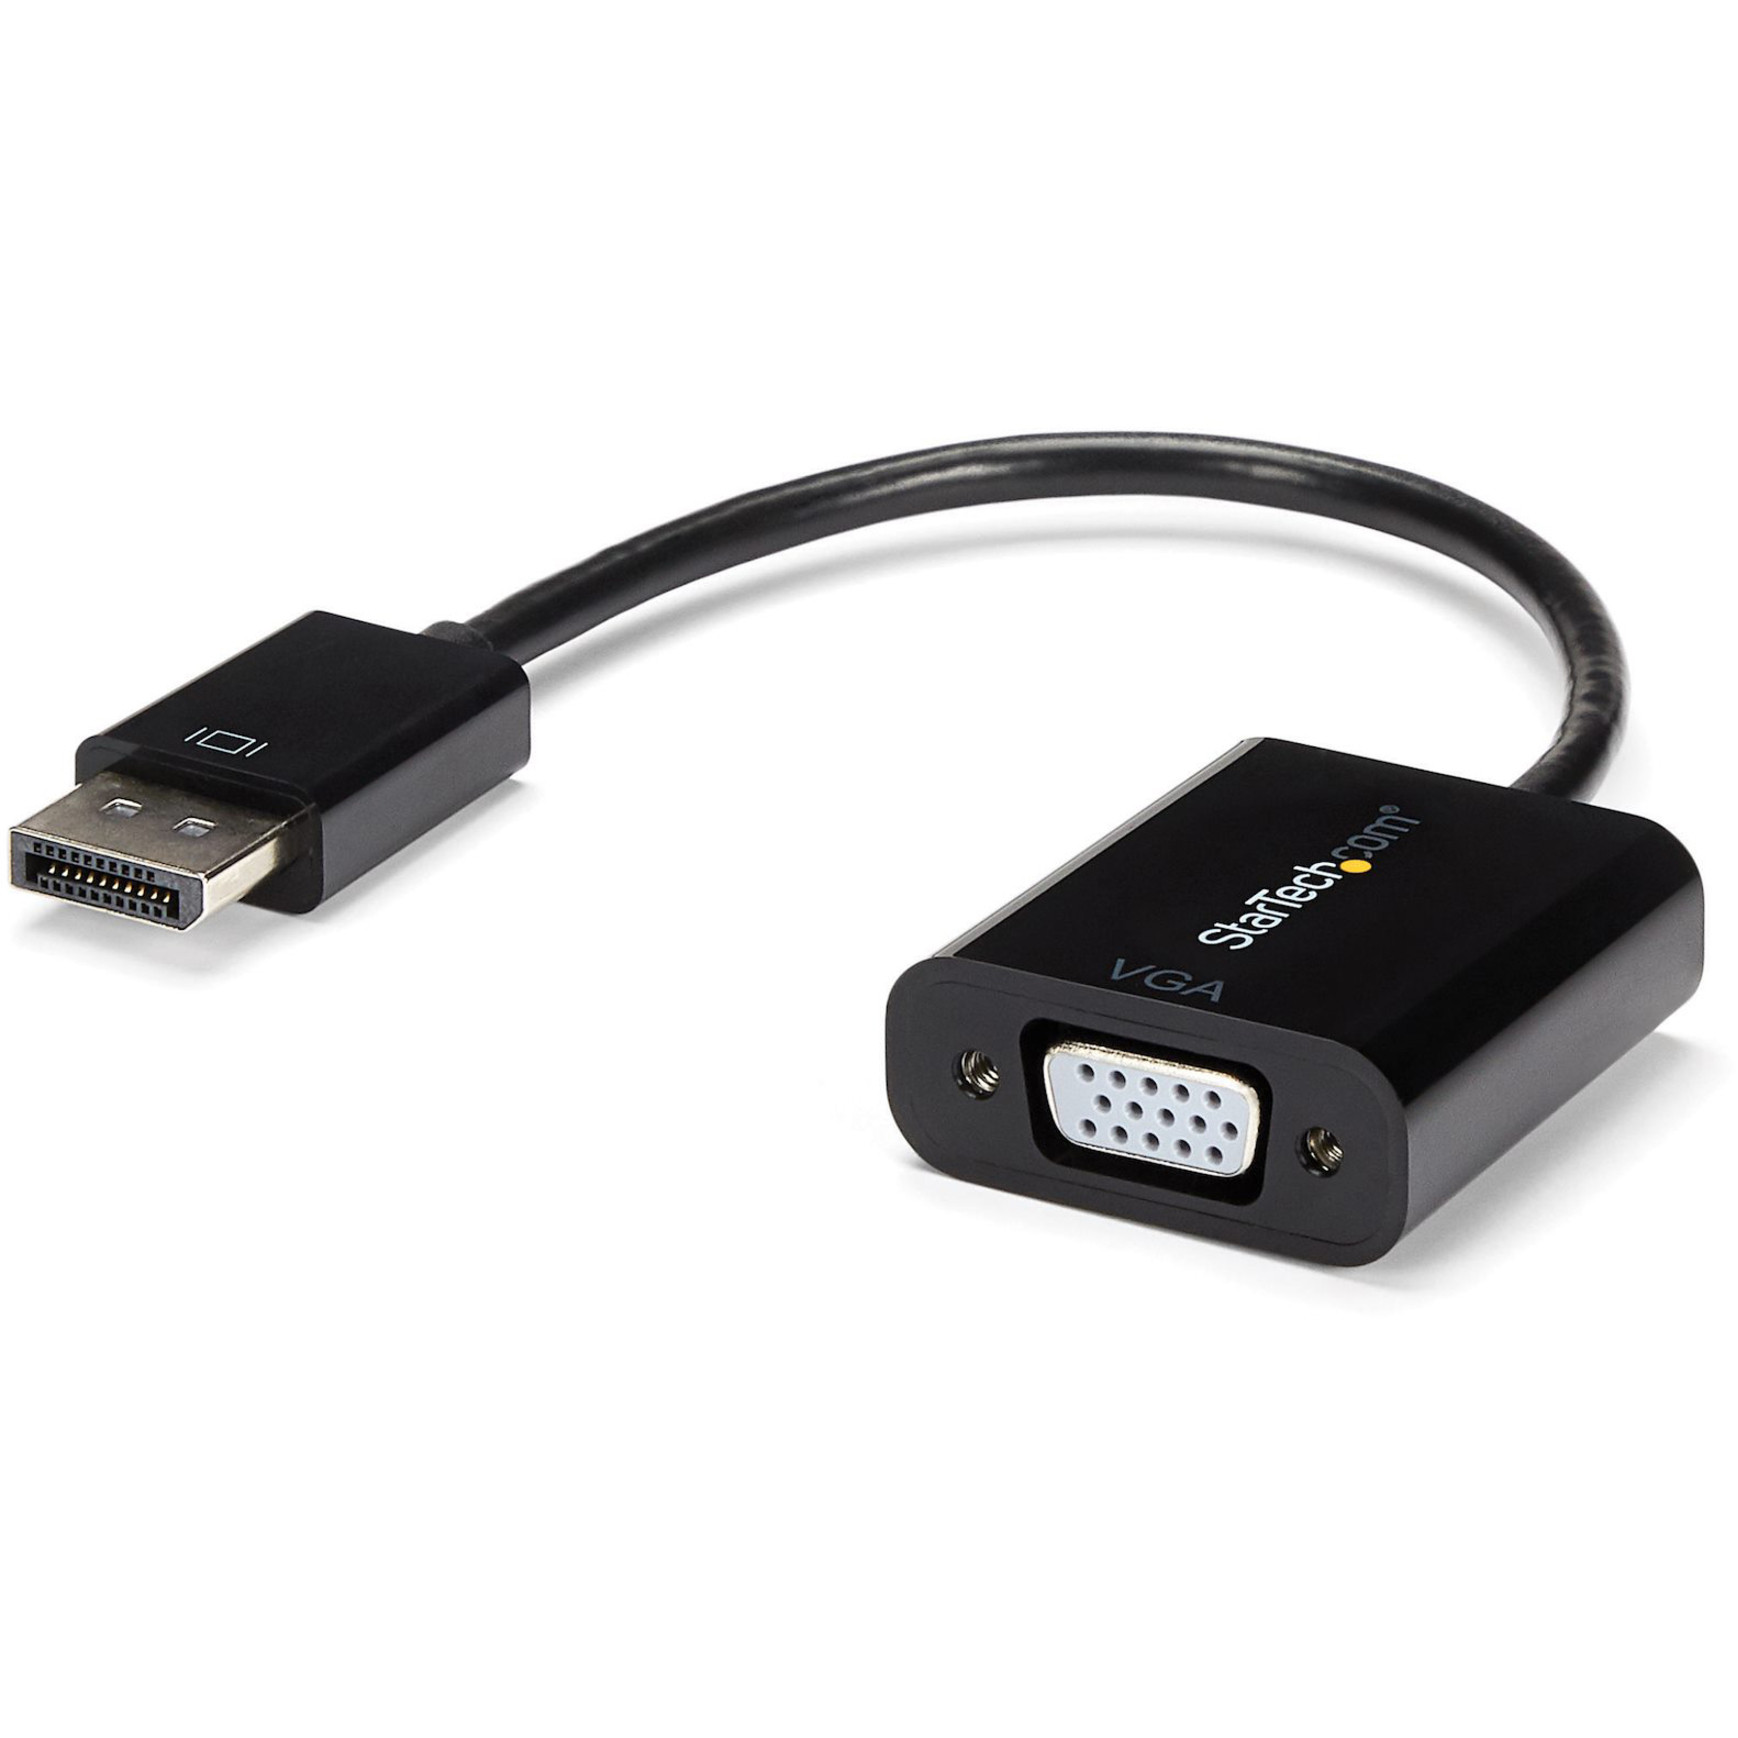 Startech .com DisplayPort to VGA Adapter, Active DP to VGA Converter, 1080p Video, DP to VGA Adapter Dongle (Digital to Analog), DP 1.2Active… DP2VGA3